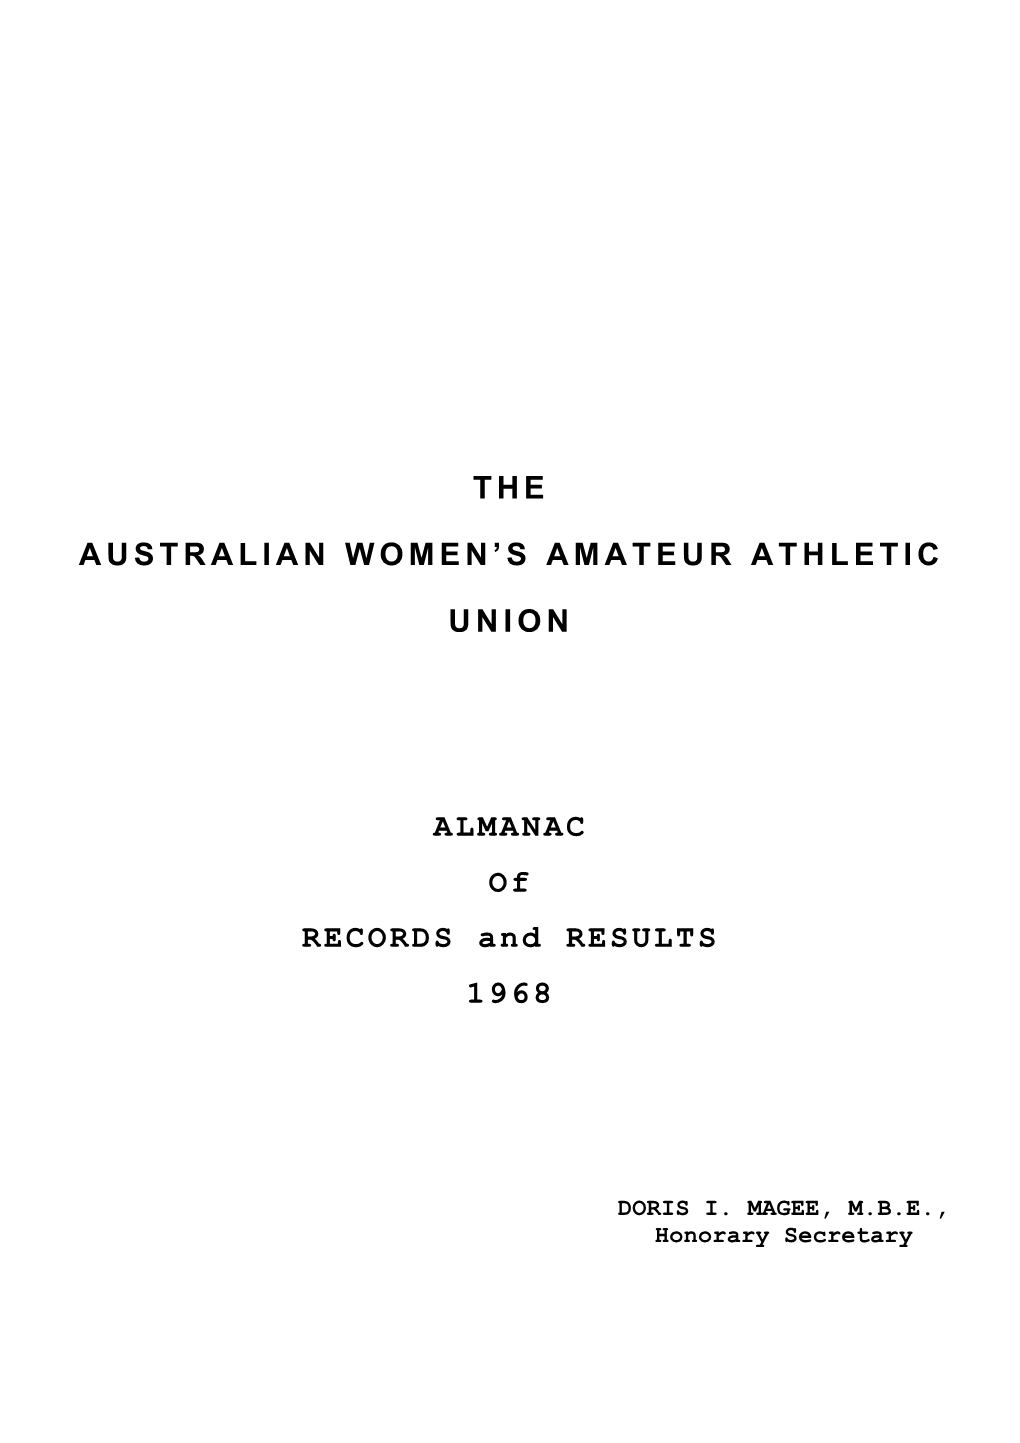 The Australian Women's Amateur Athletic Union